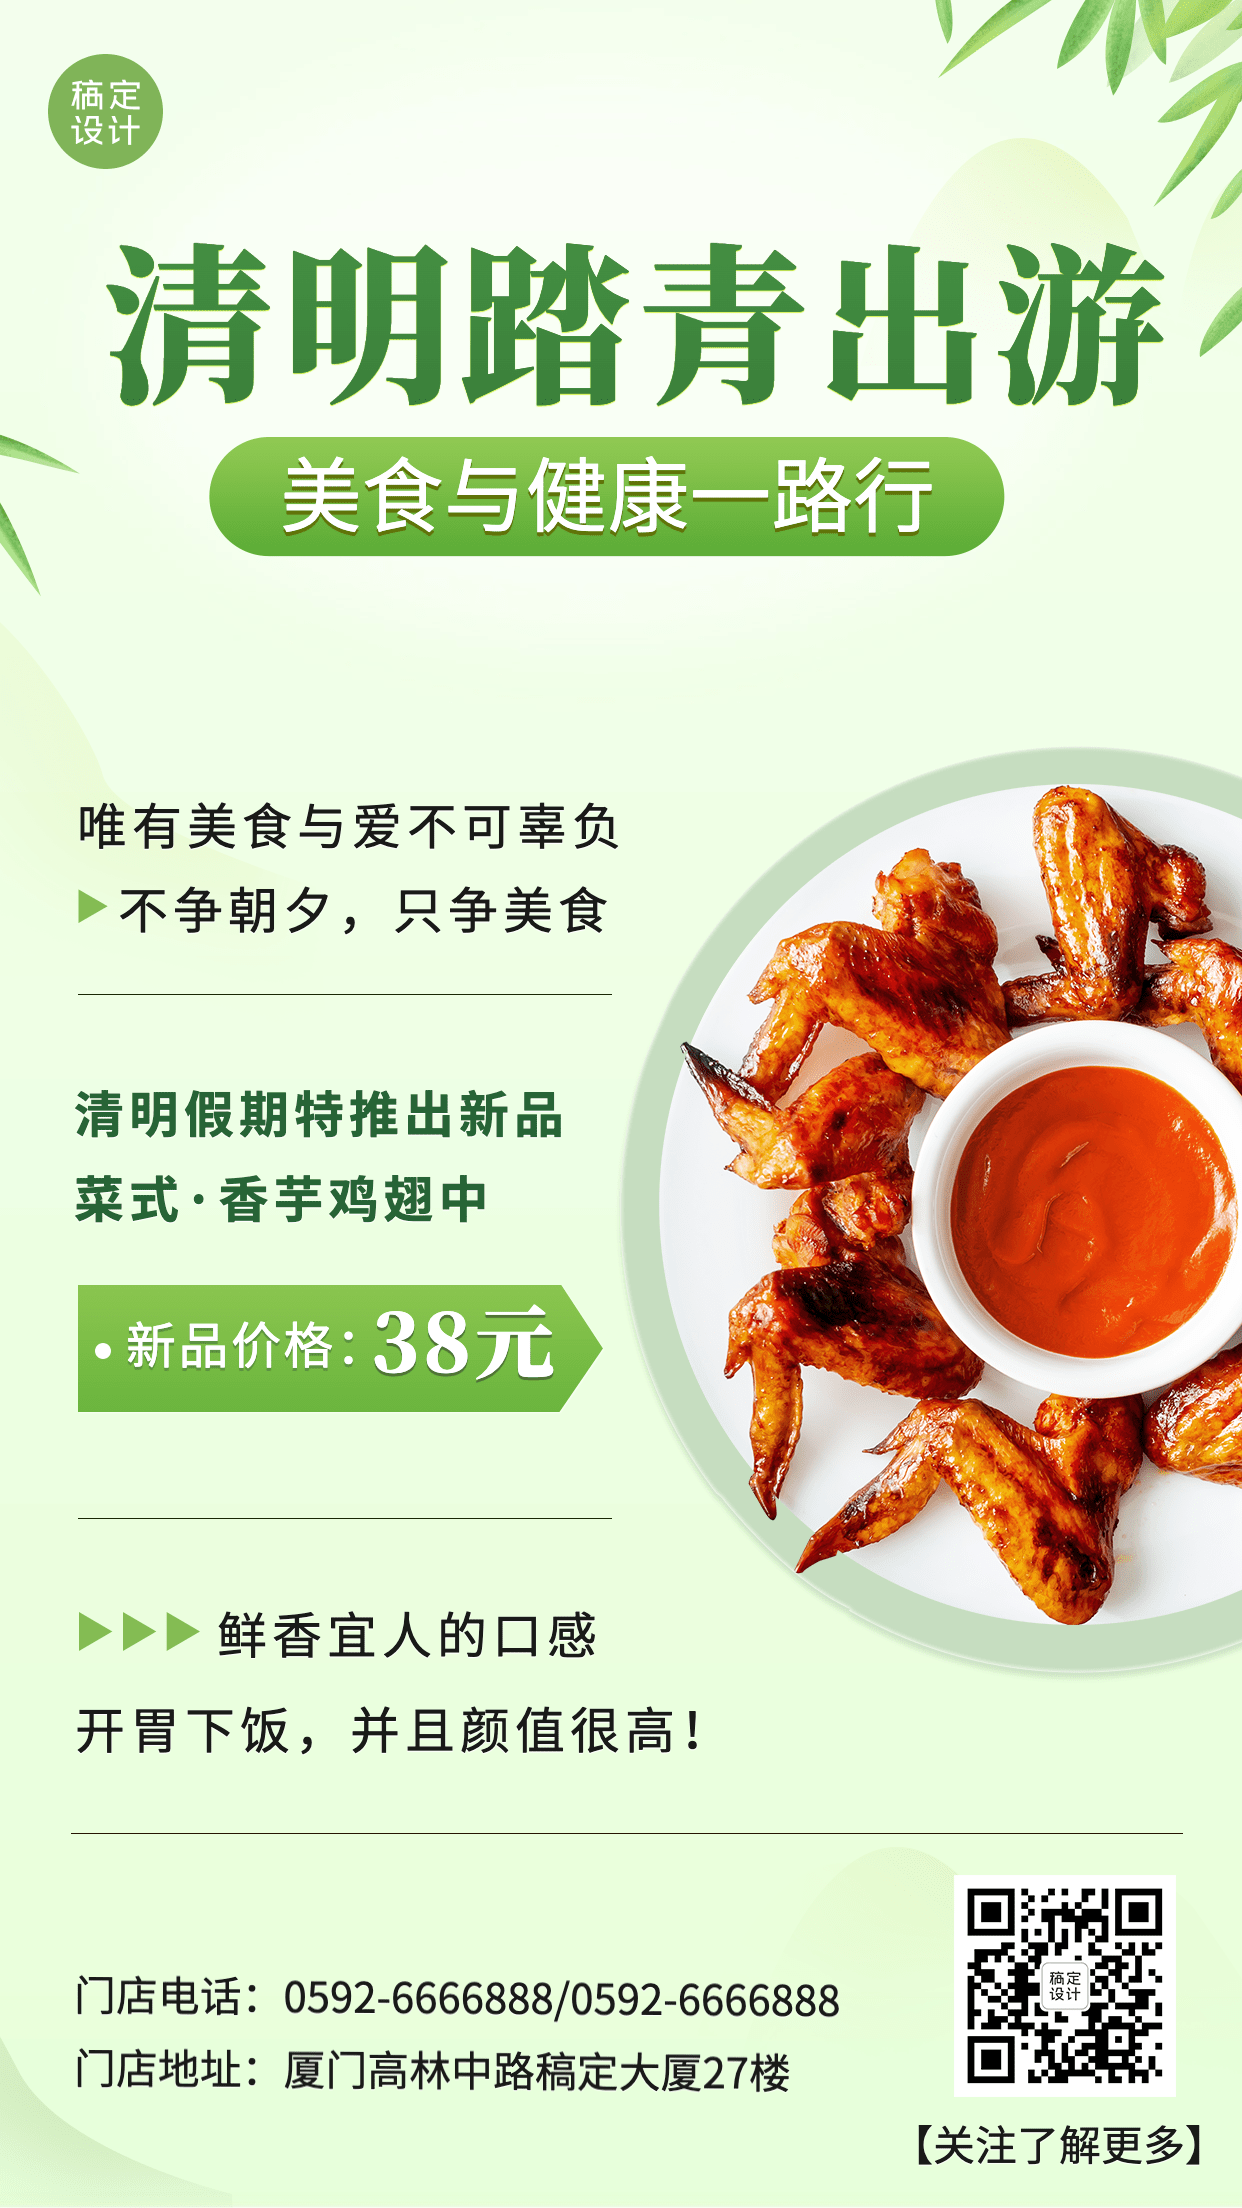 清明节踏青活动营销促销餐饮手机海报